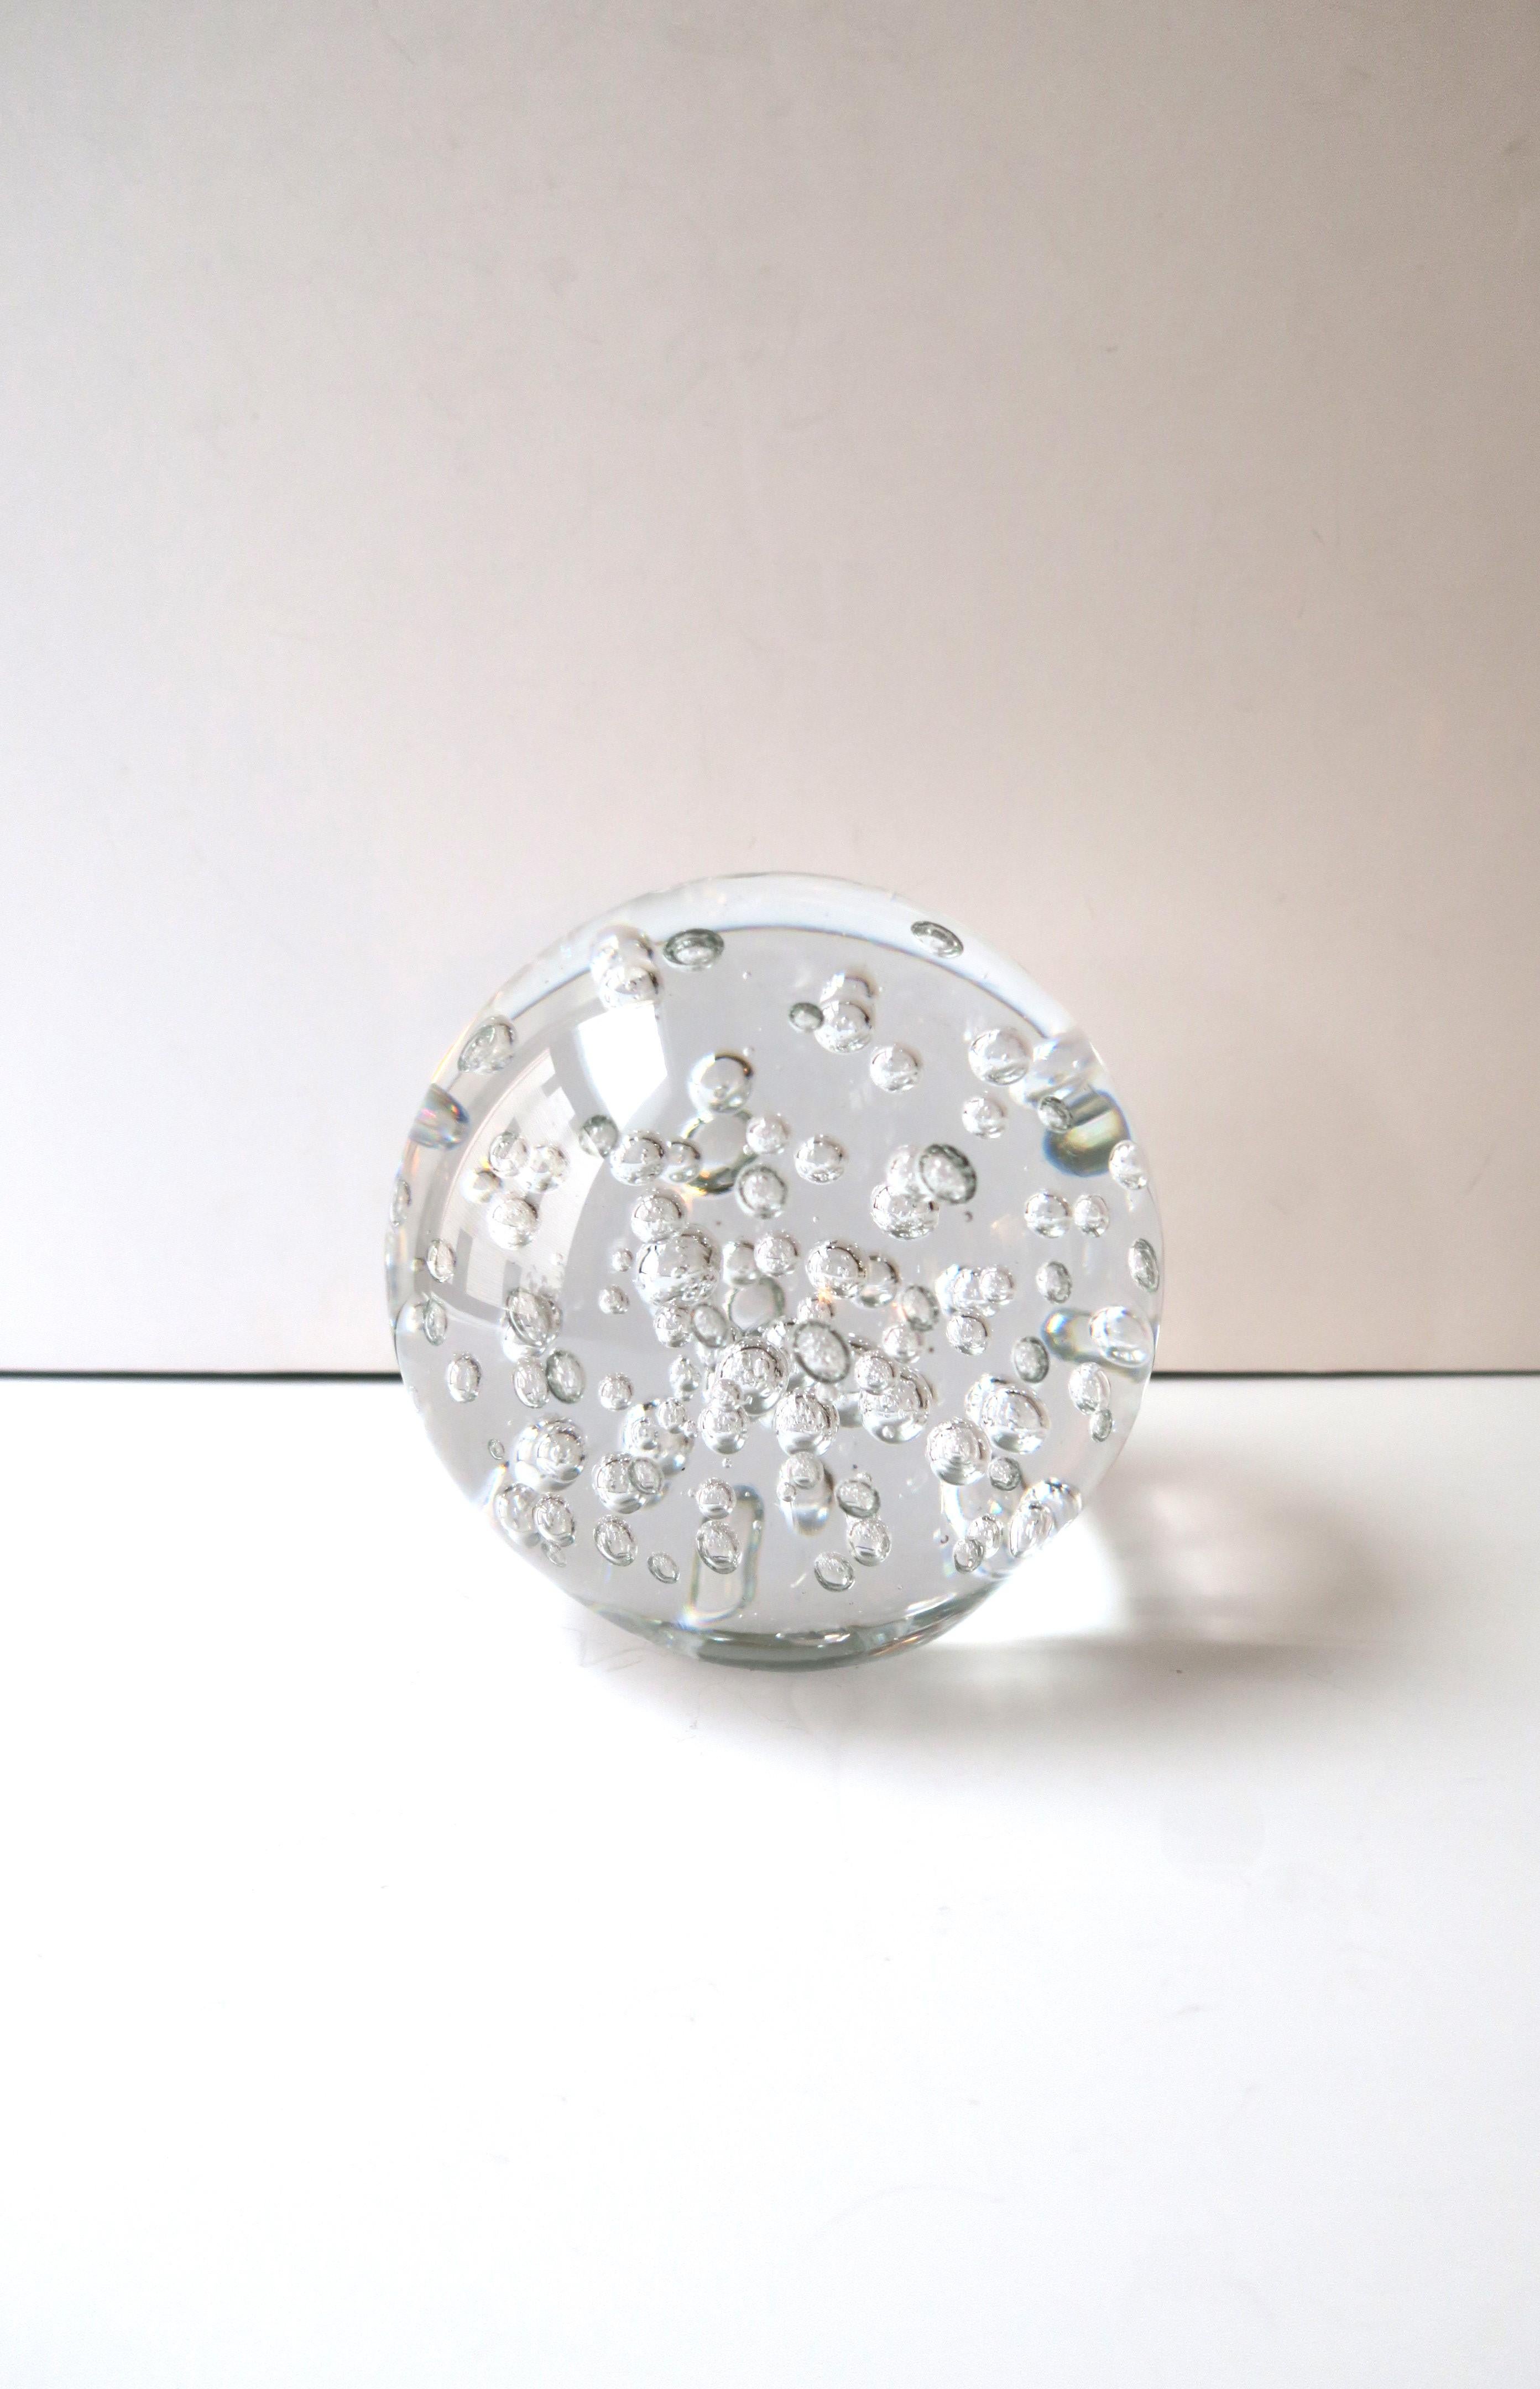 Eine relativ große, runde, transparente Kunstglaskugel mit Blasenmuster im Stil der Moderne. Ein tolles Dekorationsobjekt. In einem Regal, auf einem Cocktail- oder Couchtisch, auf einem Bücherregal, einer Kredenz, etc. Die Kugel hat einen flachen